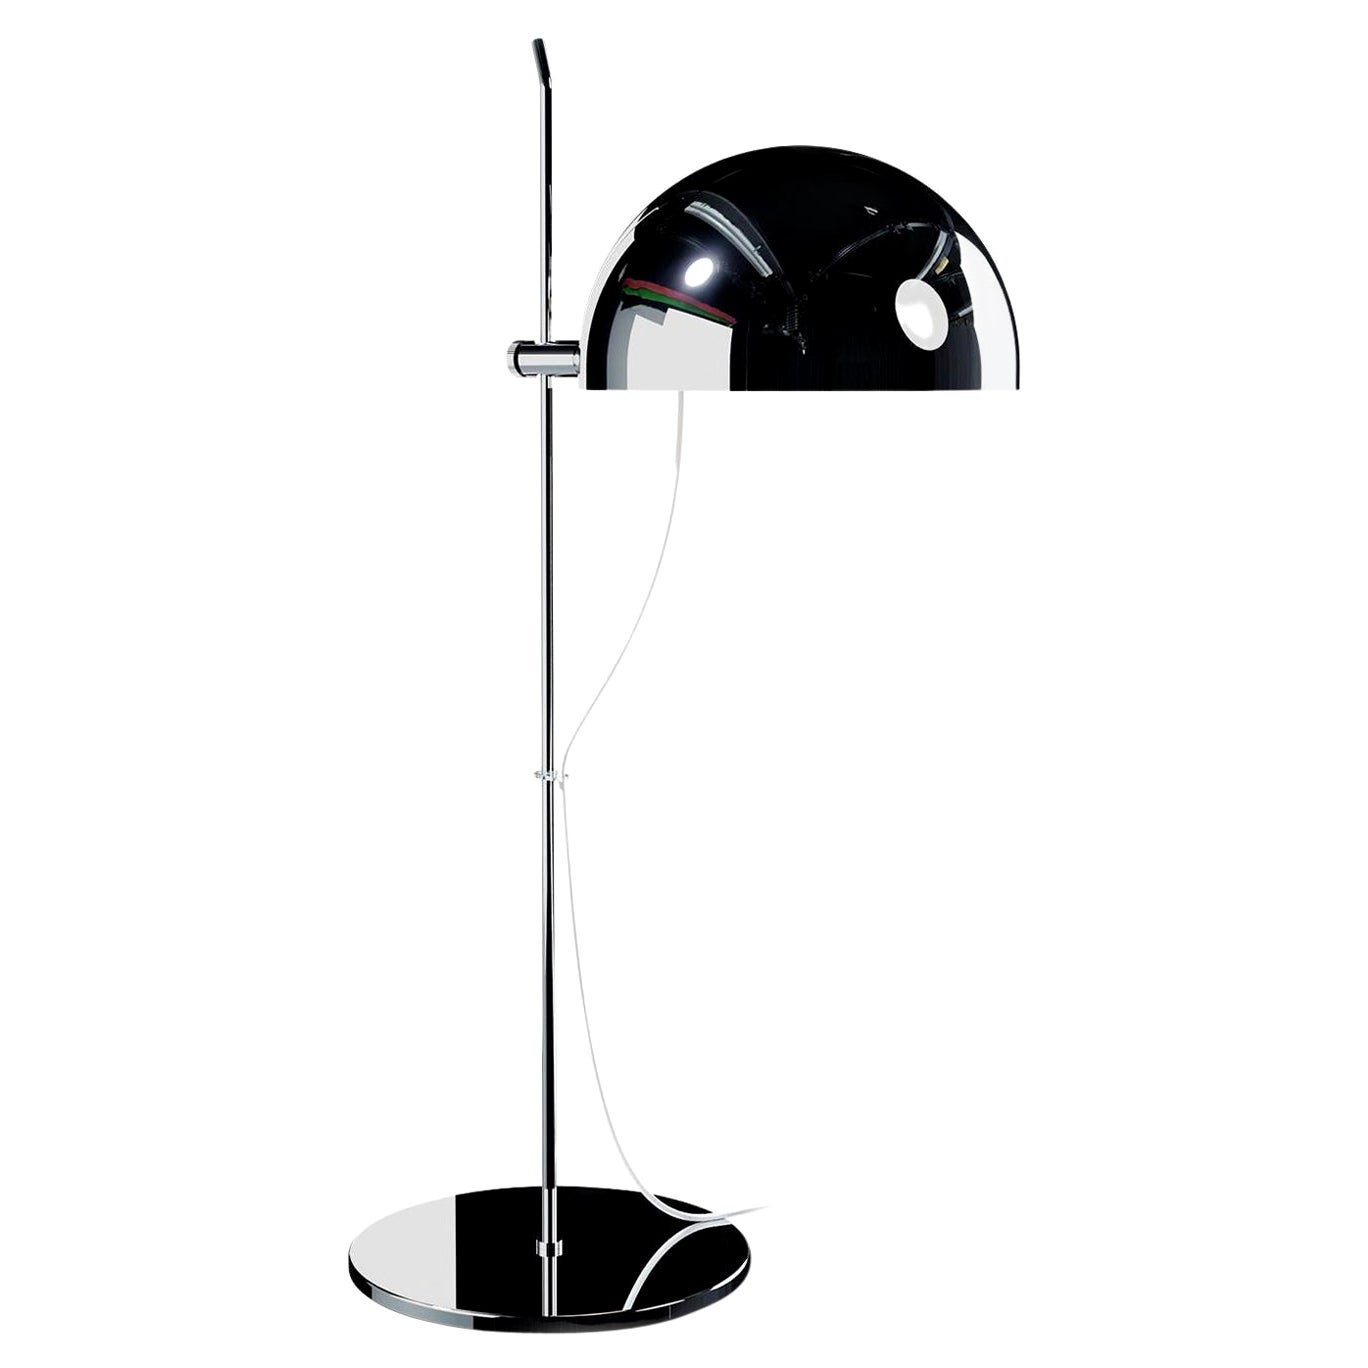 Alain Richard 'A21' Desk Lamp in Chrome for Disderot For Sale